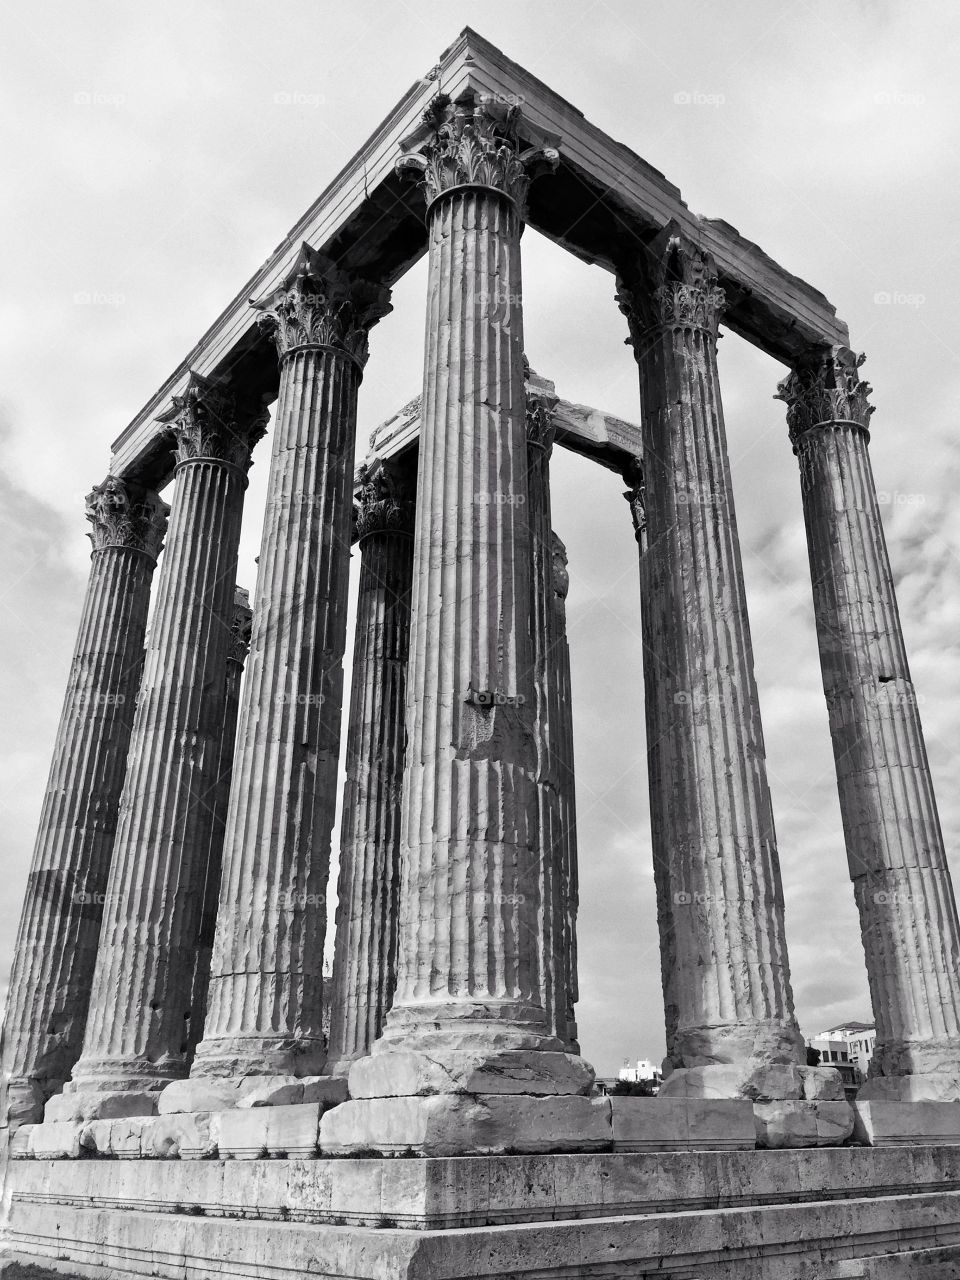 Temple of olympian Zeus